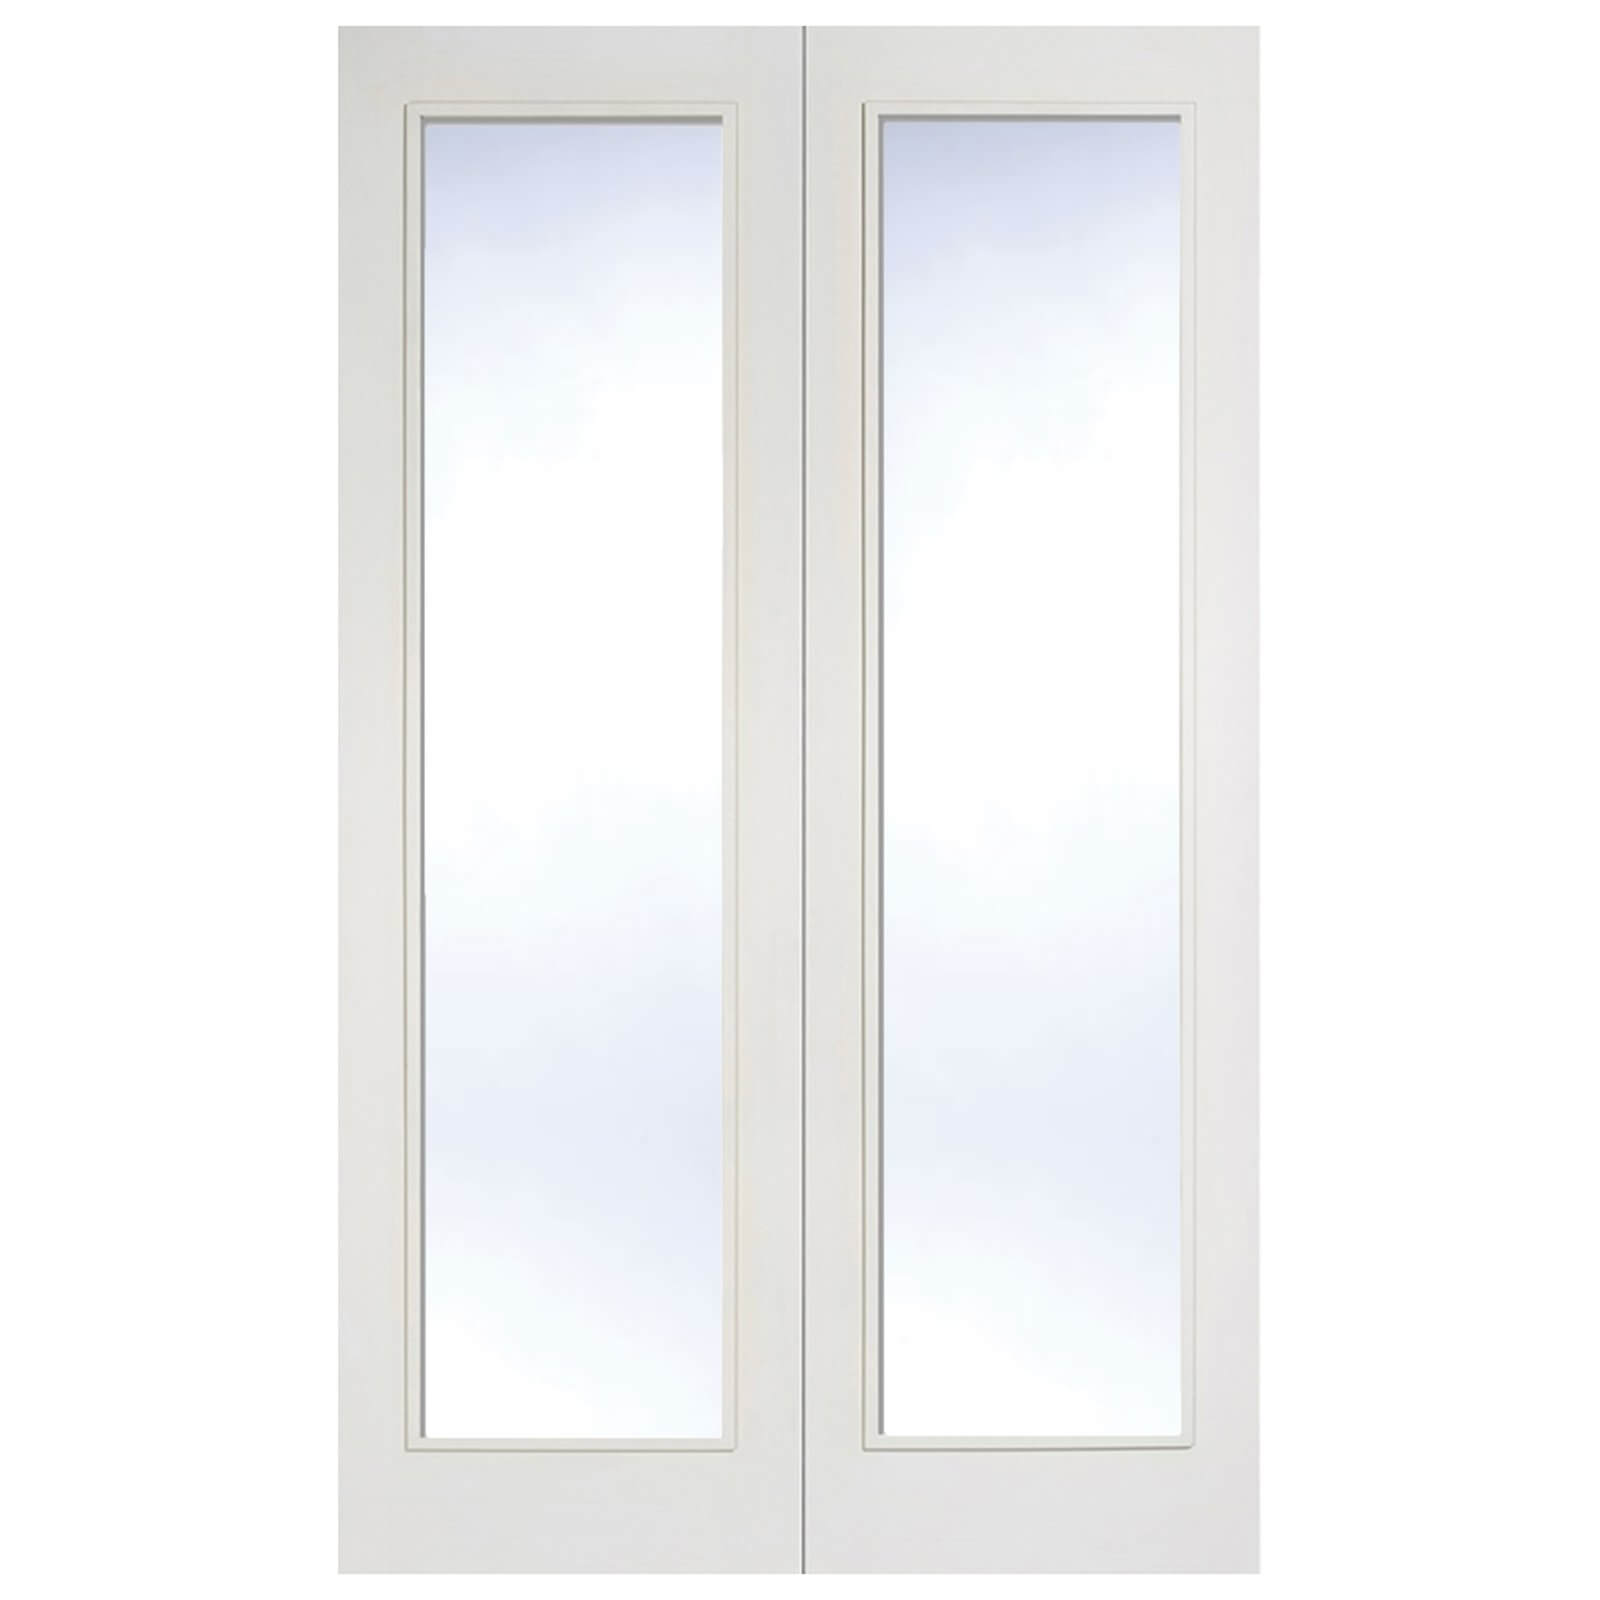 Pattern 20 Internal Glazed Primed White 1 Lite Pair Doors - 1220 x 1981mm